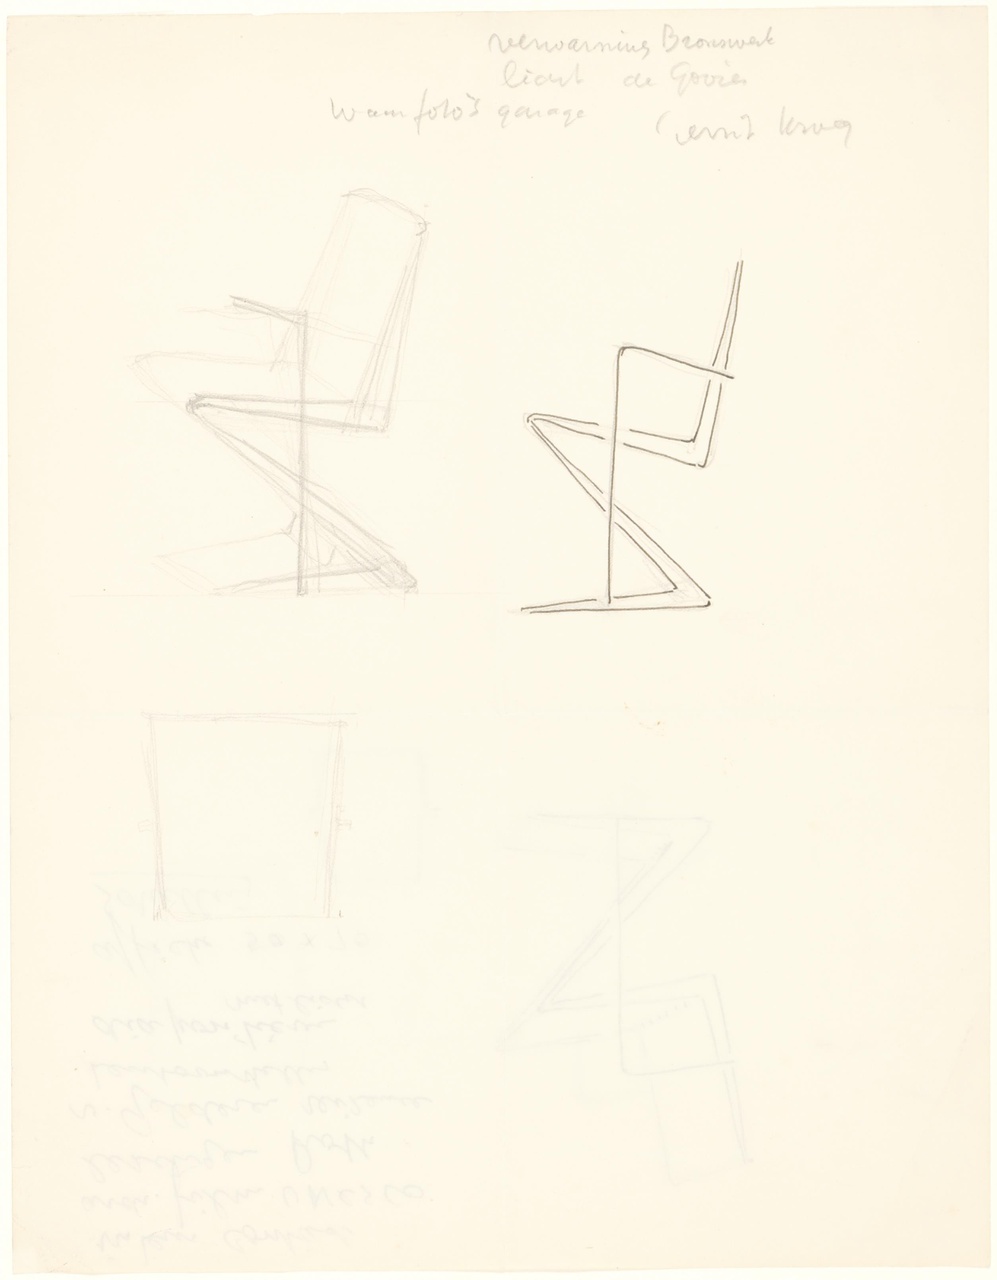 Zigzag meubilair (stoel met armleuningen, zigzagstoel met armleuningen)